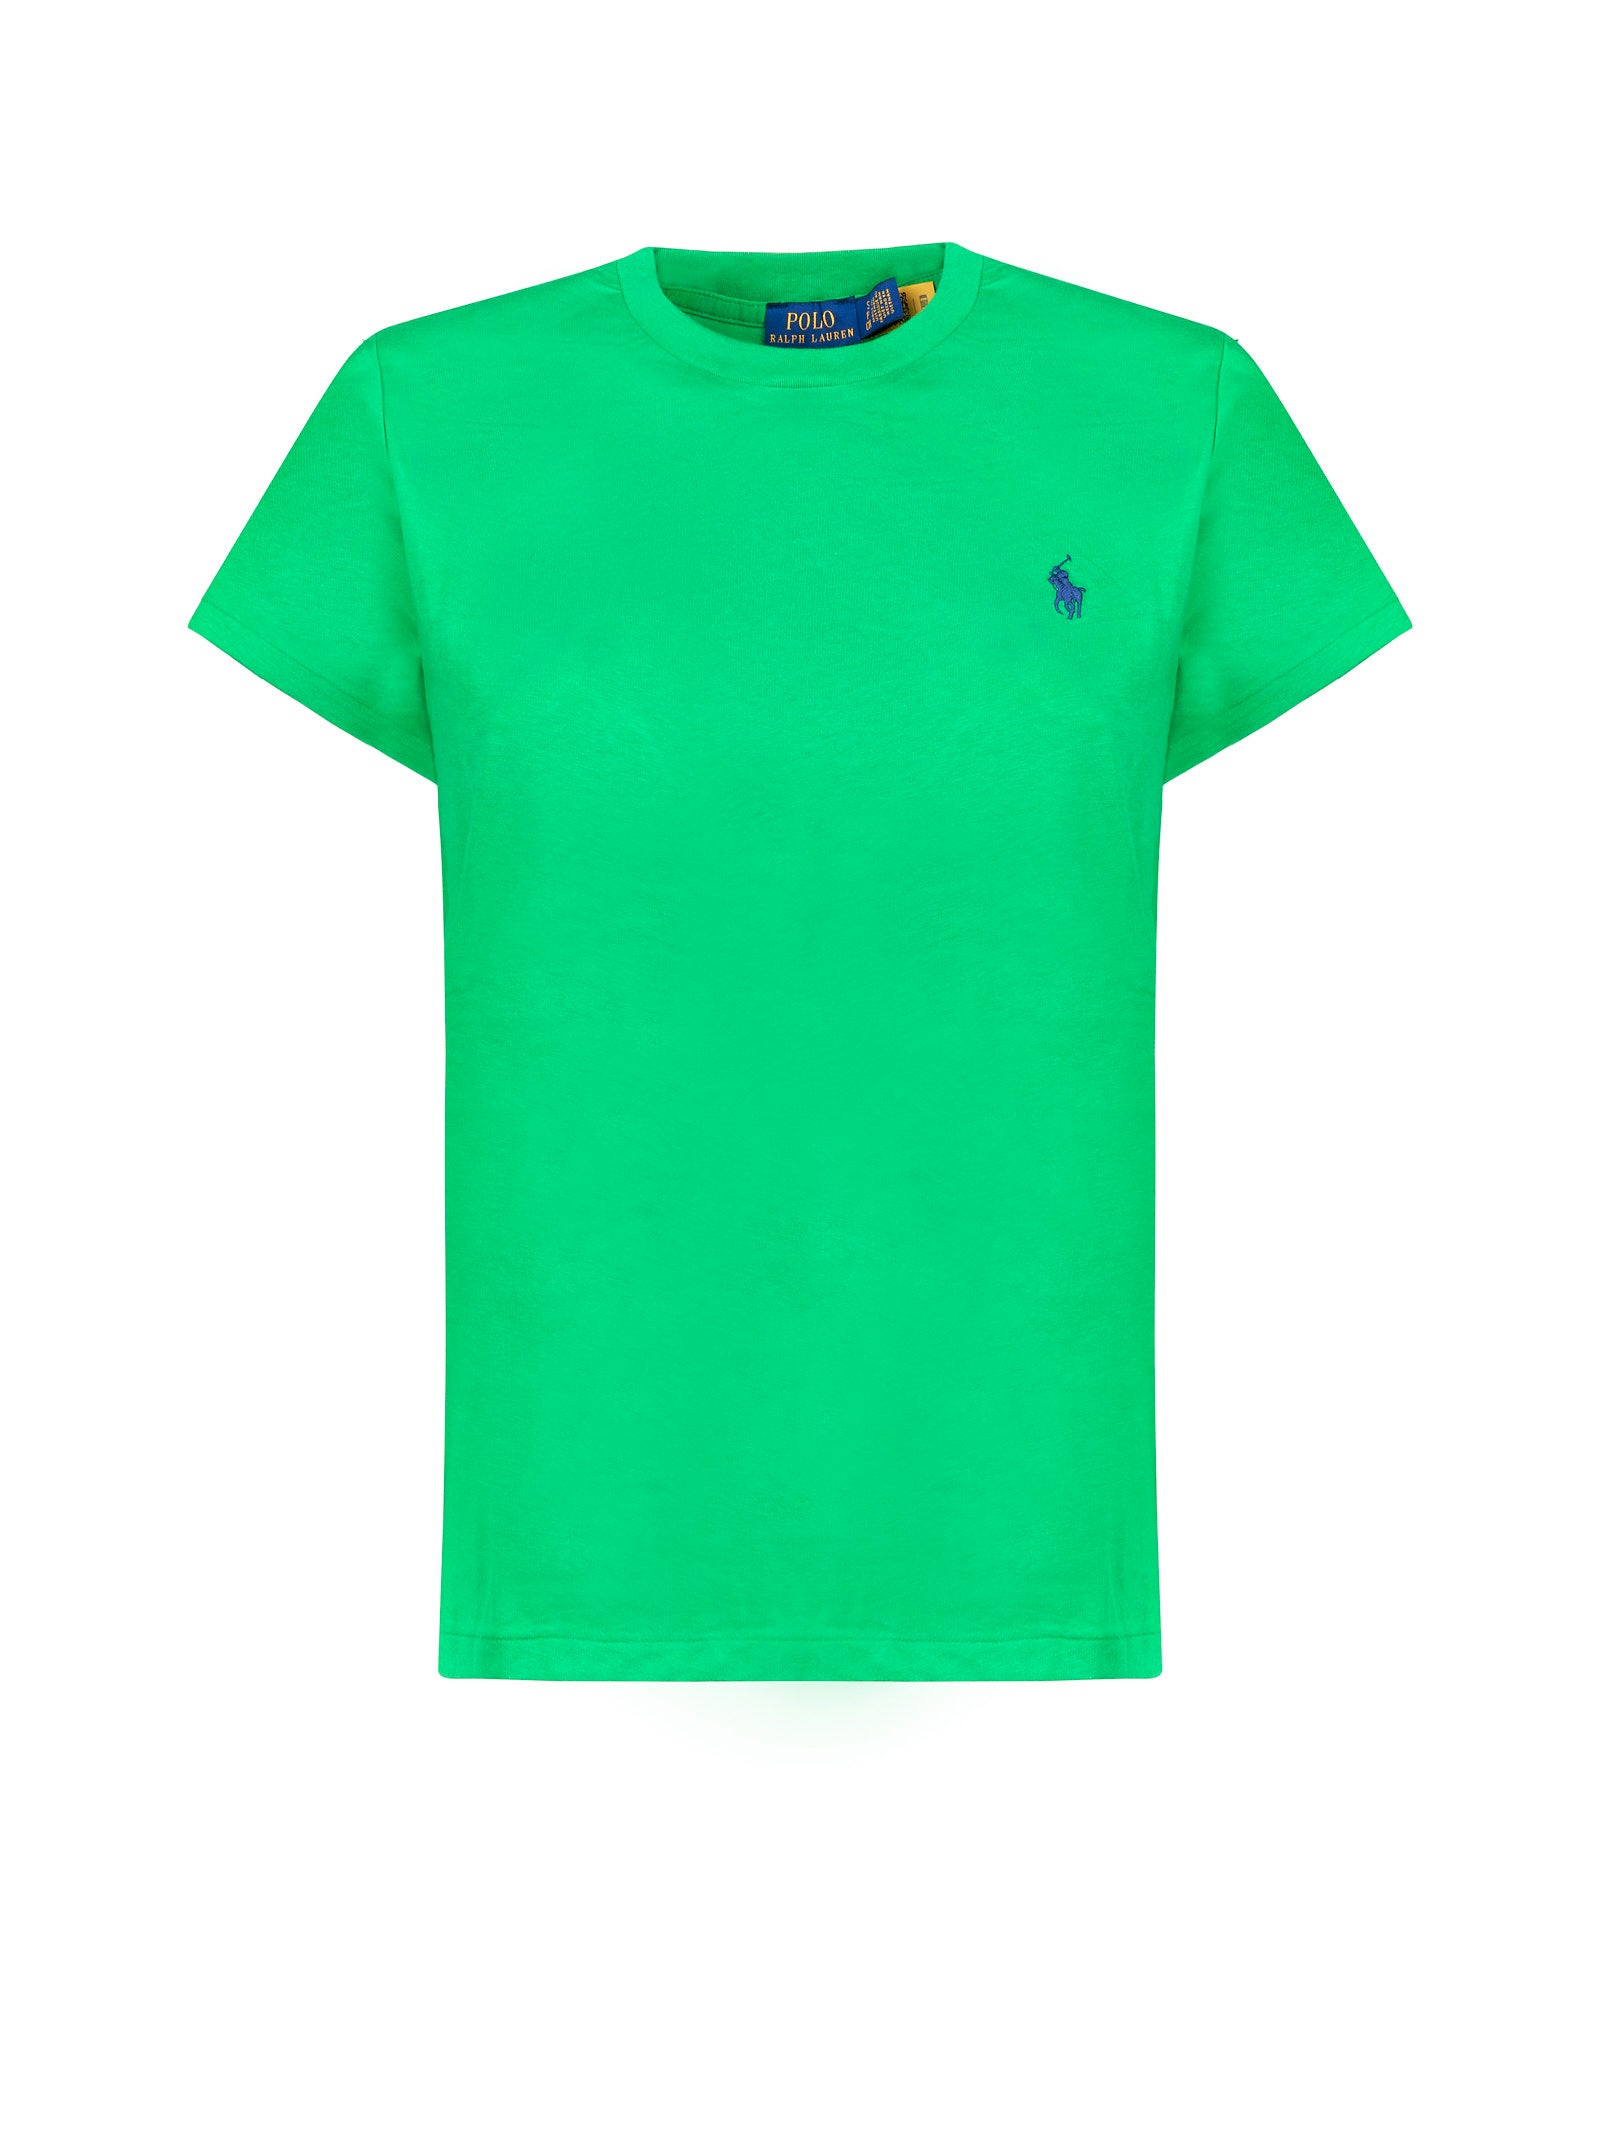 T-shirt POLO RALPH LAUREN
Green